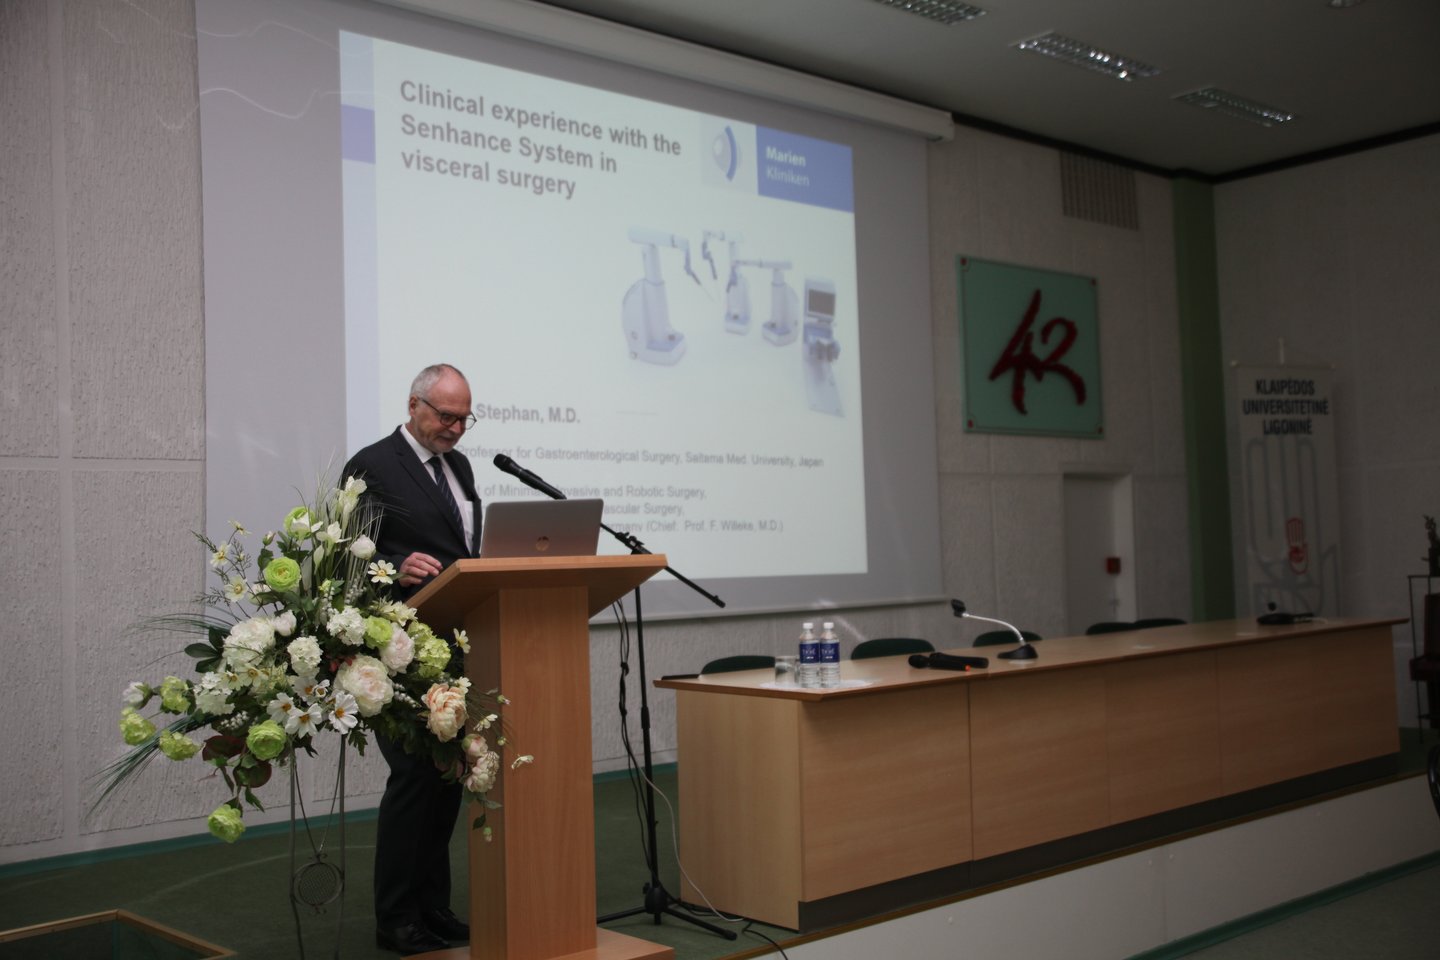  Pranešimą aktualiais robotinės chirurgijos klausimais 2019 metų vasario 6 dieną konferencijoje skaitė ir garsus profesorius iš Vokietijos D.Stephanas.<br> A.Kubaičio nuotr.